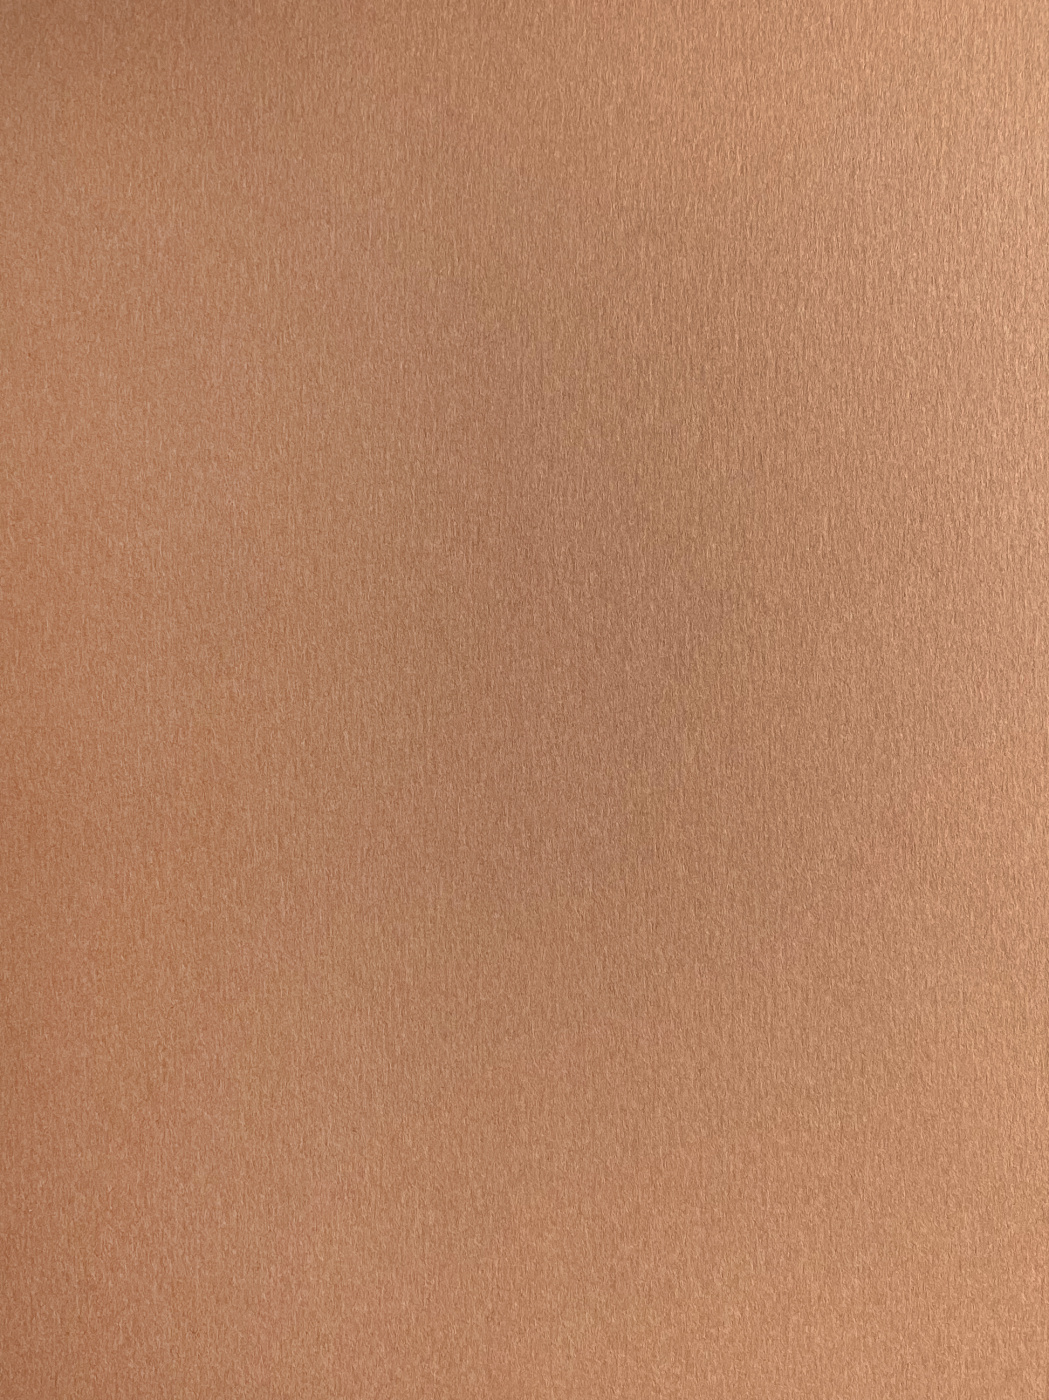 Бумага для пастели Малевичъ GrafArt А3 270 г, коричневая светлая крафт бумага для графики эскизов и печати а4 50 листов 120 г м² коричневая